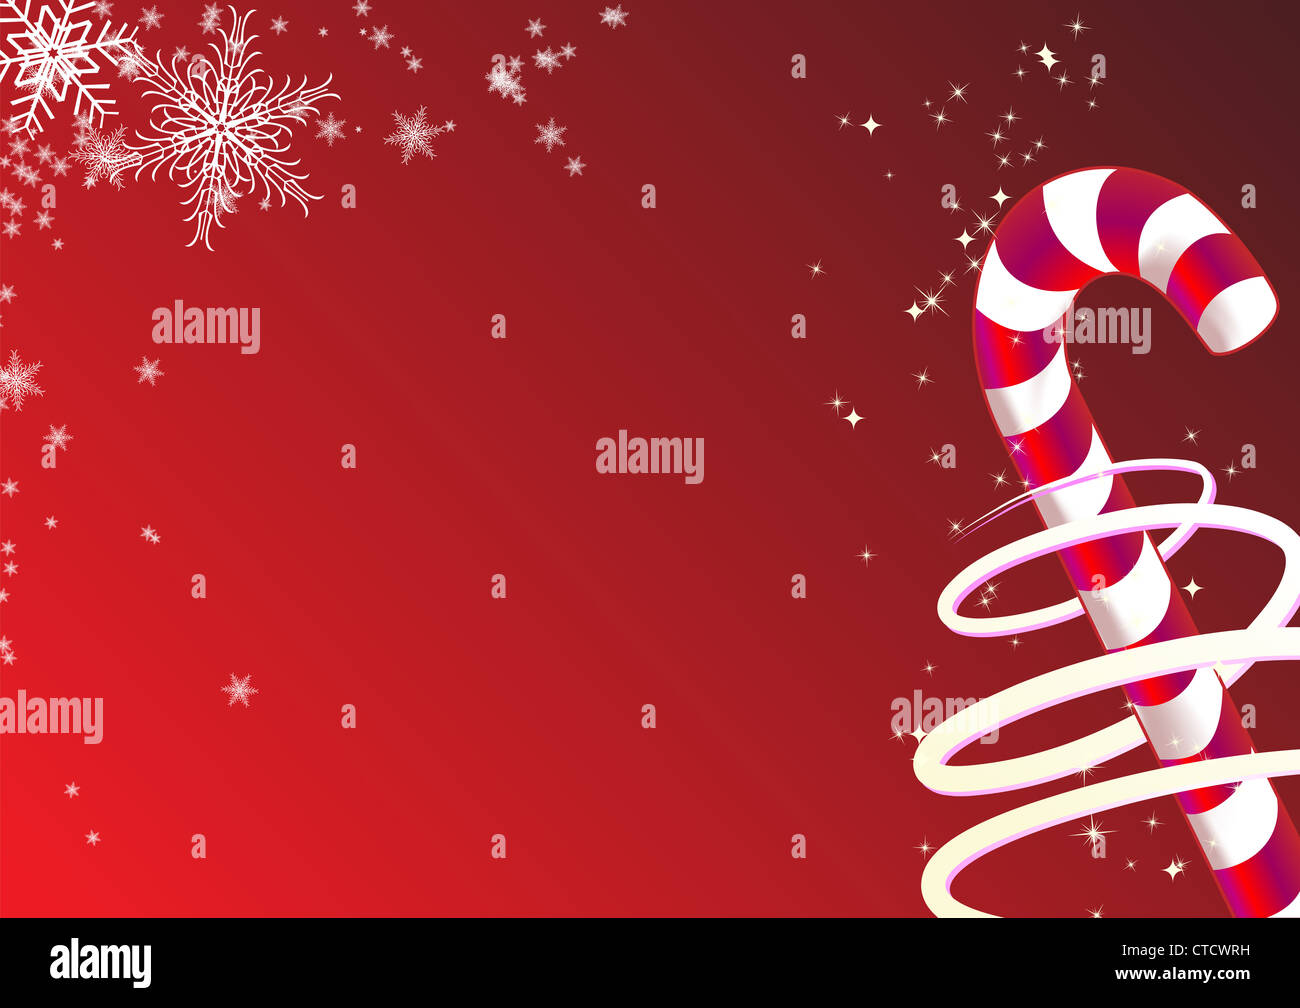 Ilustración vectorial de fondo de navidad. Incluye dulces y copos de nieve. Foto de stock